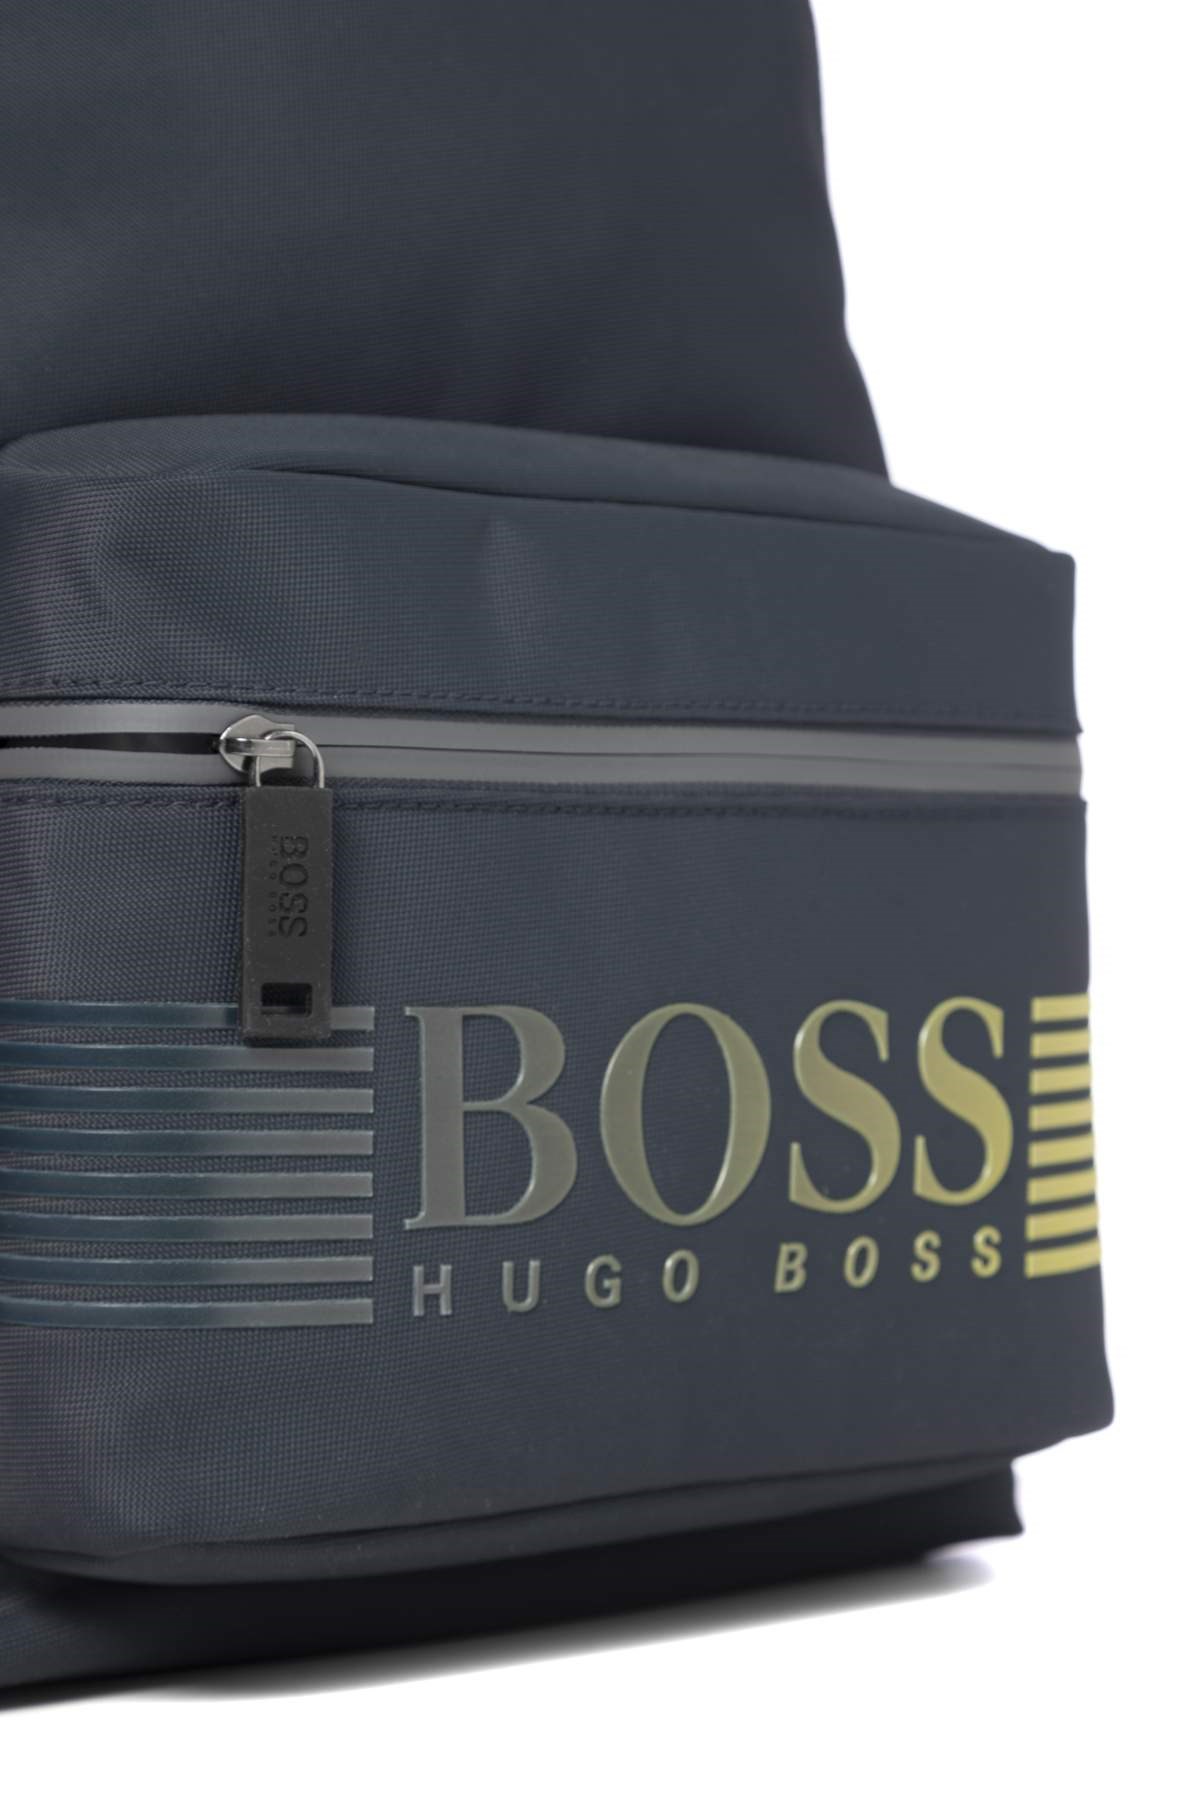 HUGO BOSS Logolu Sırt ÇantasıIn-Formal